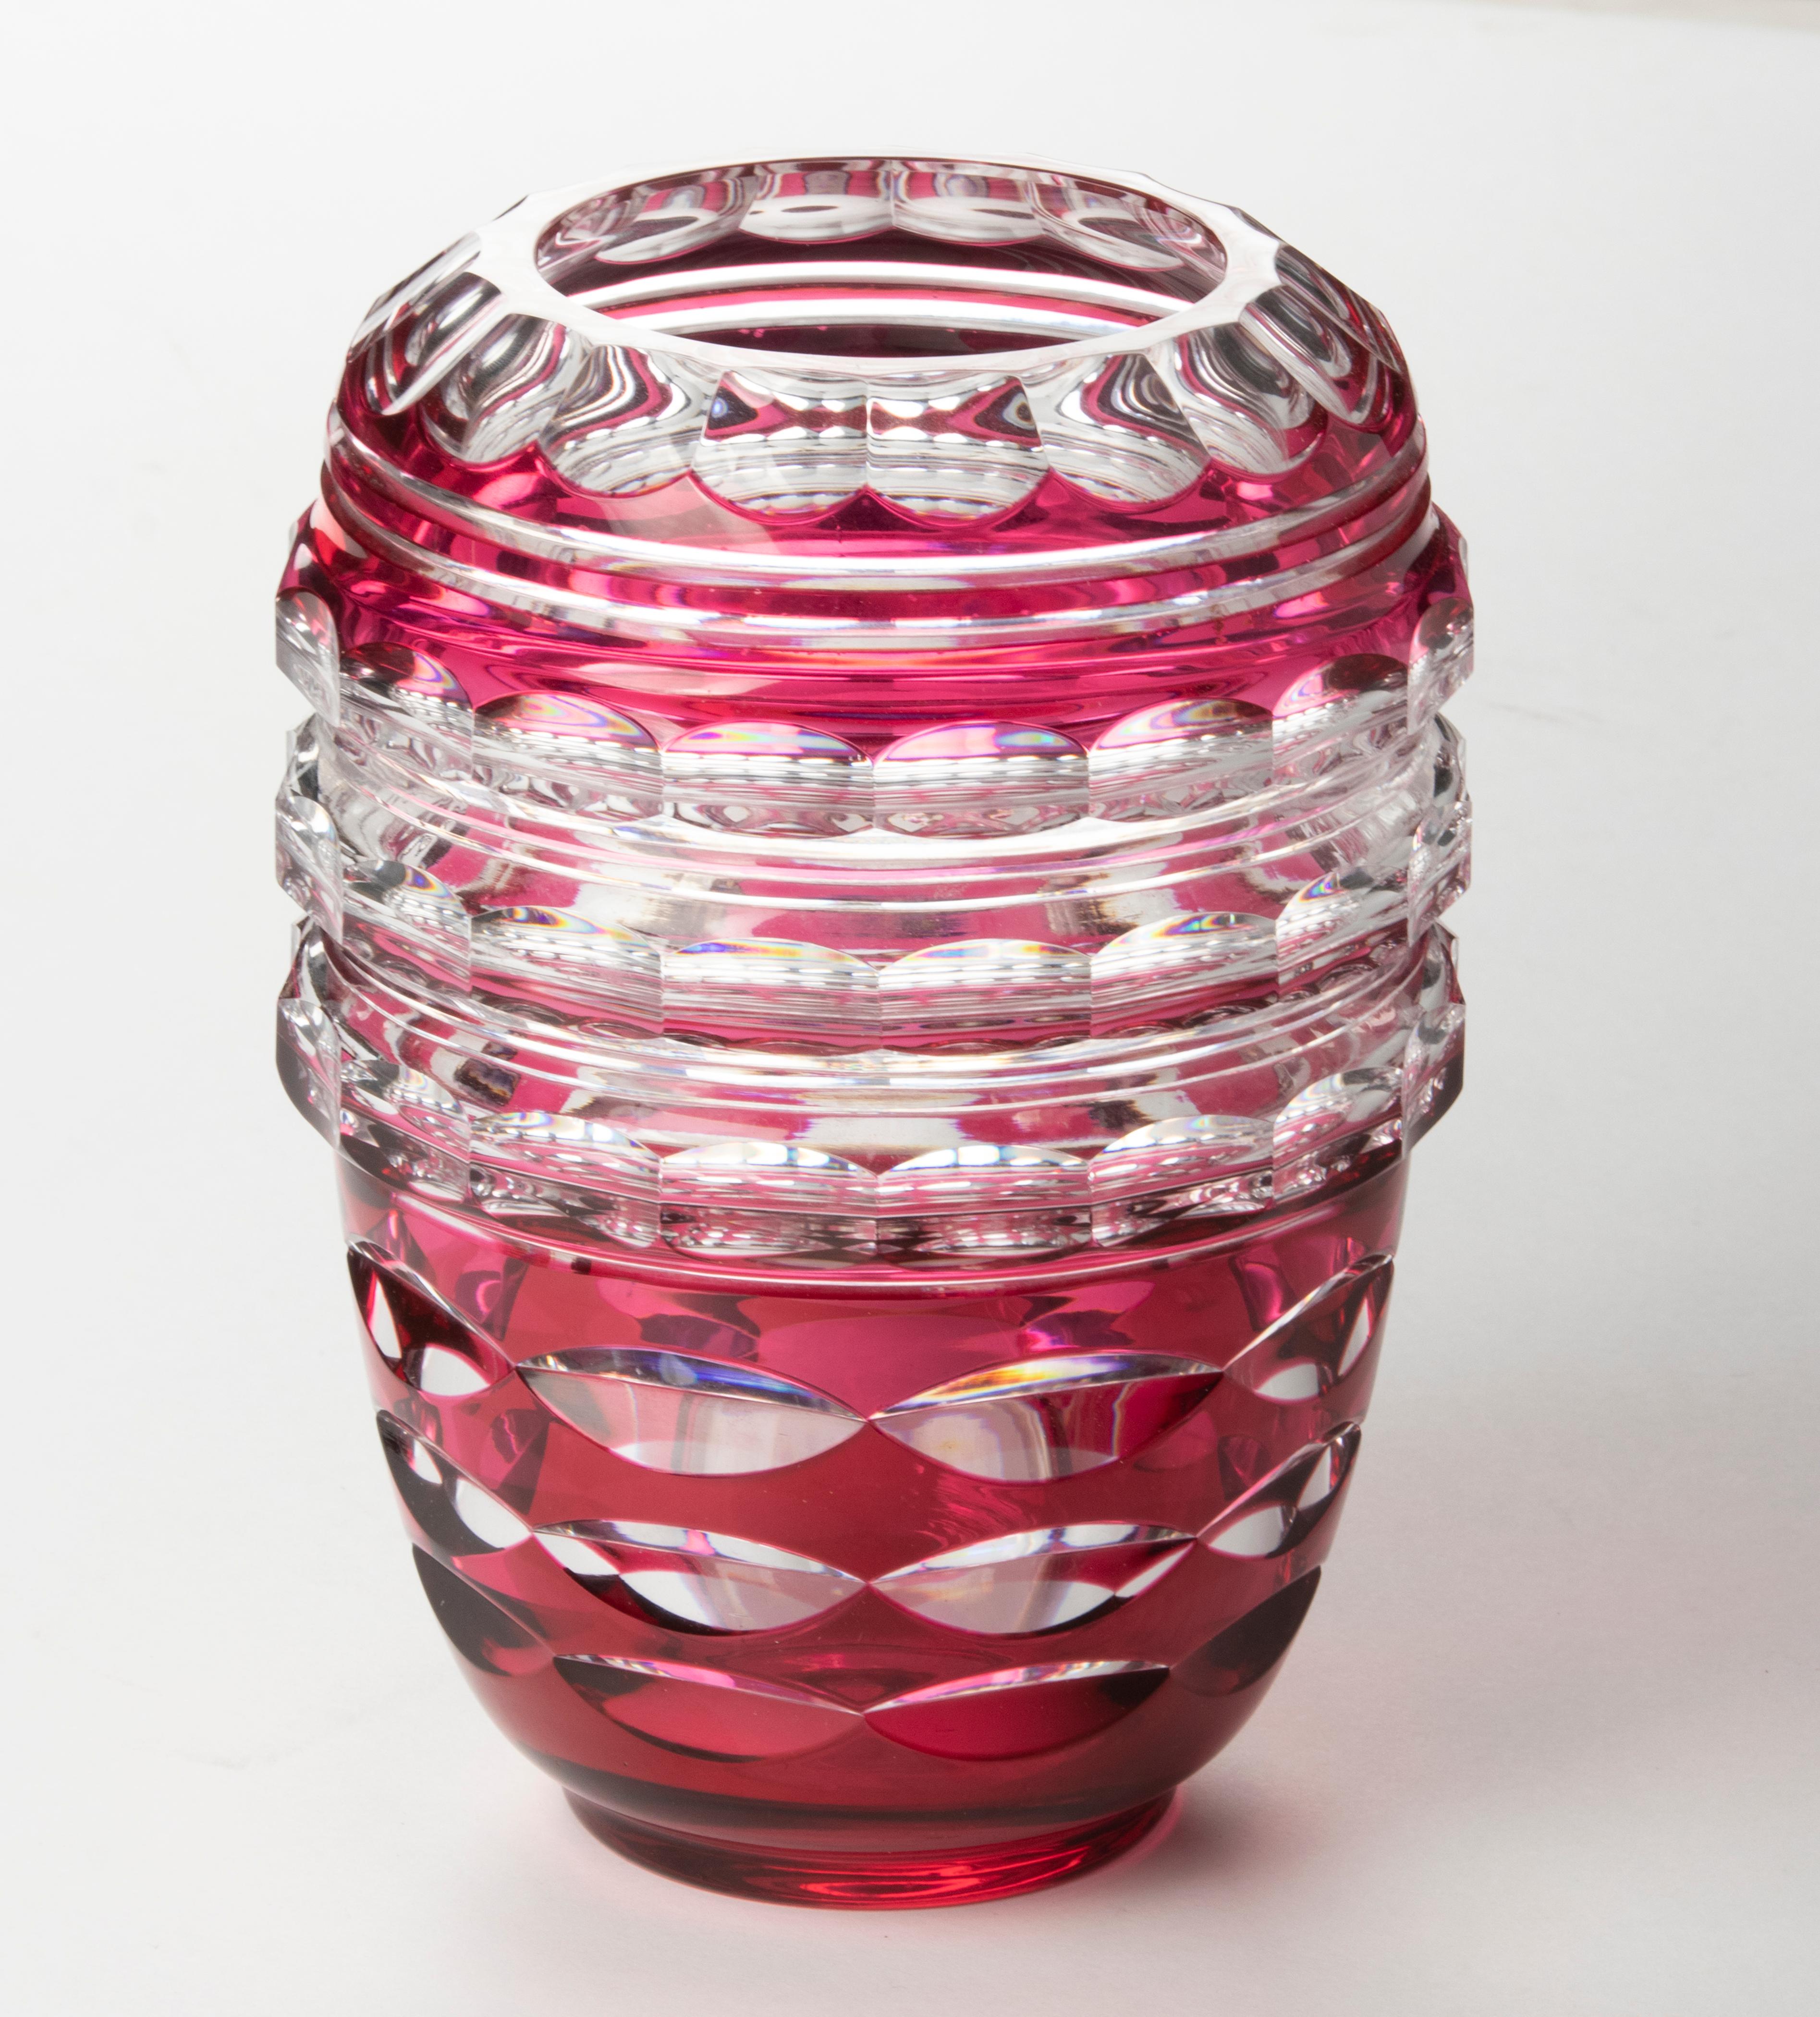 Vase en cristal de la marque belge Val Saint Lambert. Belle combinaison de couleurs de cristal rouge et clair, avec une belle taille. Le vase n'est pas marqué (les pièces de cette période par VSL sont rarement marquées). Il s'agit d'un modèle bien